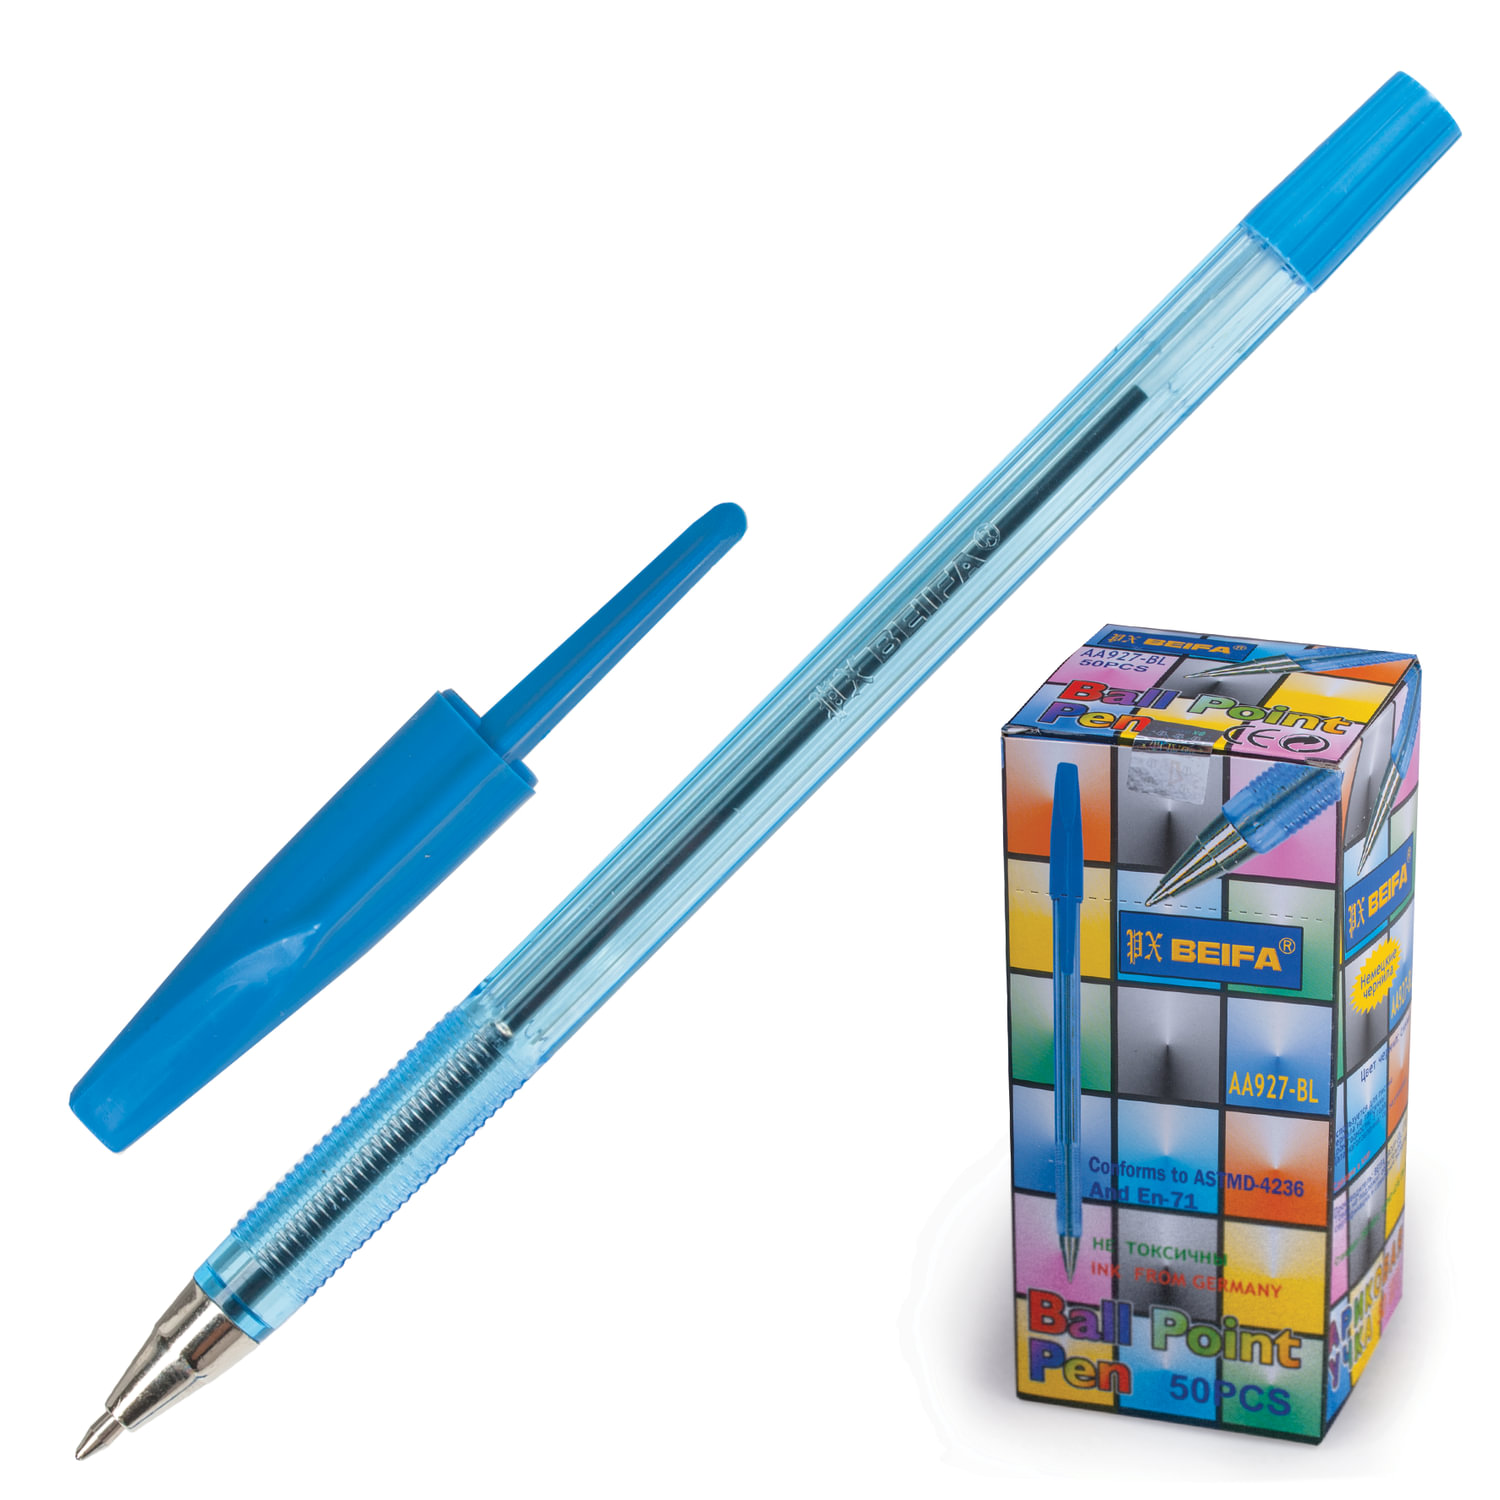 Ручка шариковая BEIFA (Бэйфа) 927, корпус тонированный синий, узел 0,7 мм, линия письма 0,5 мм, AA927-BL купите по выгодной цене